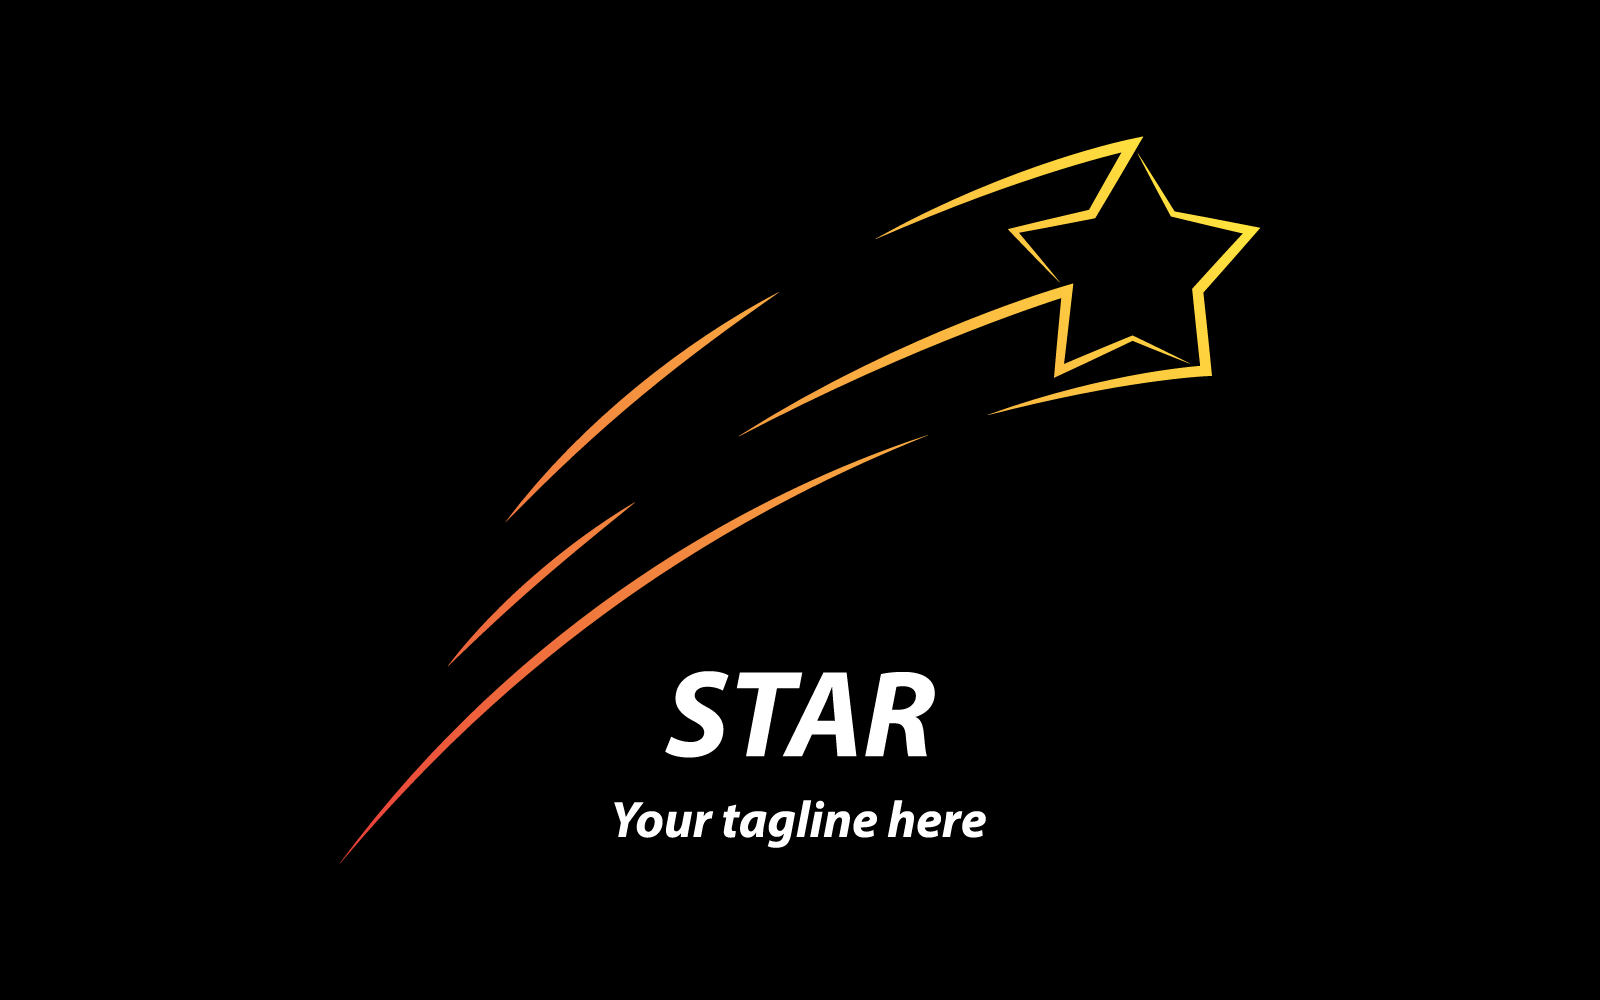 Star brush on black background vector logo design